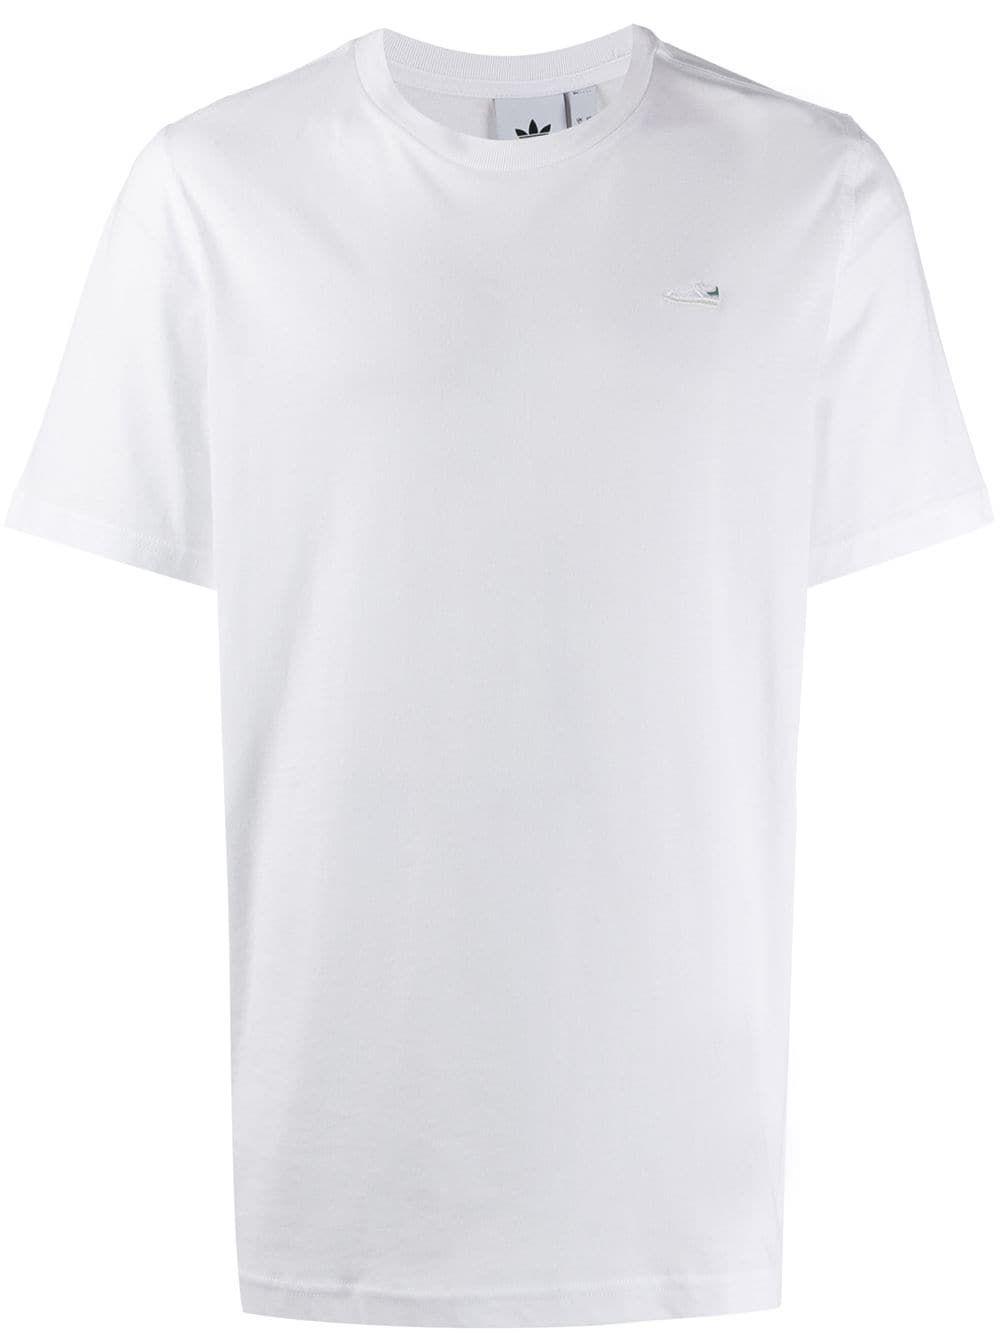 adidas white cotton t shirt